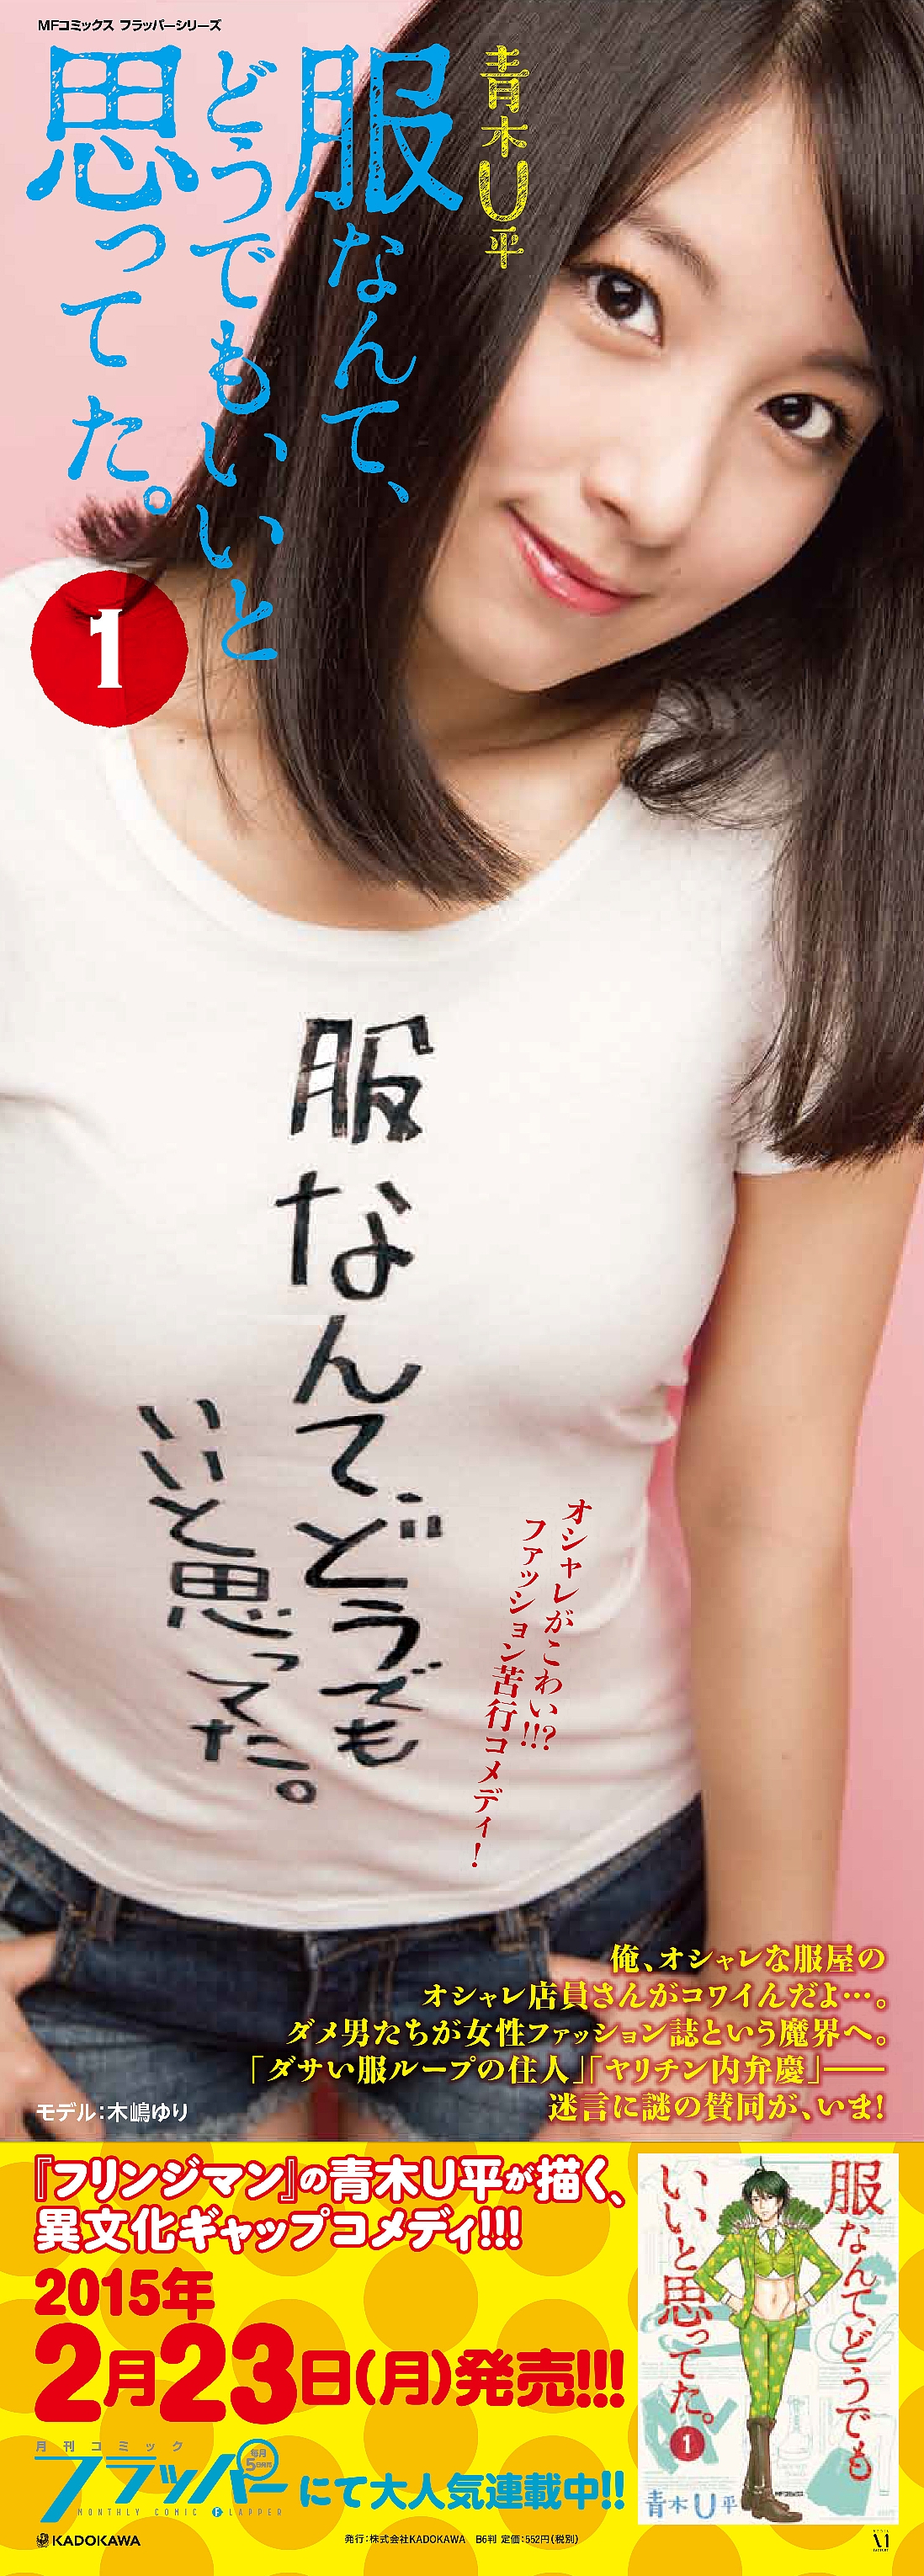 モデル木嶋ゆりがセクシーグラビアで青木ｕ平の新作 服なんて どうでもいいと思ってた を応援 株式会社kadokawaのプレスリリース